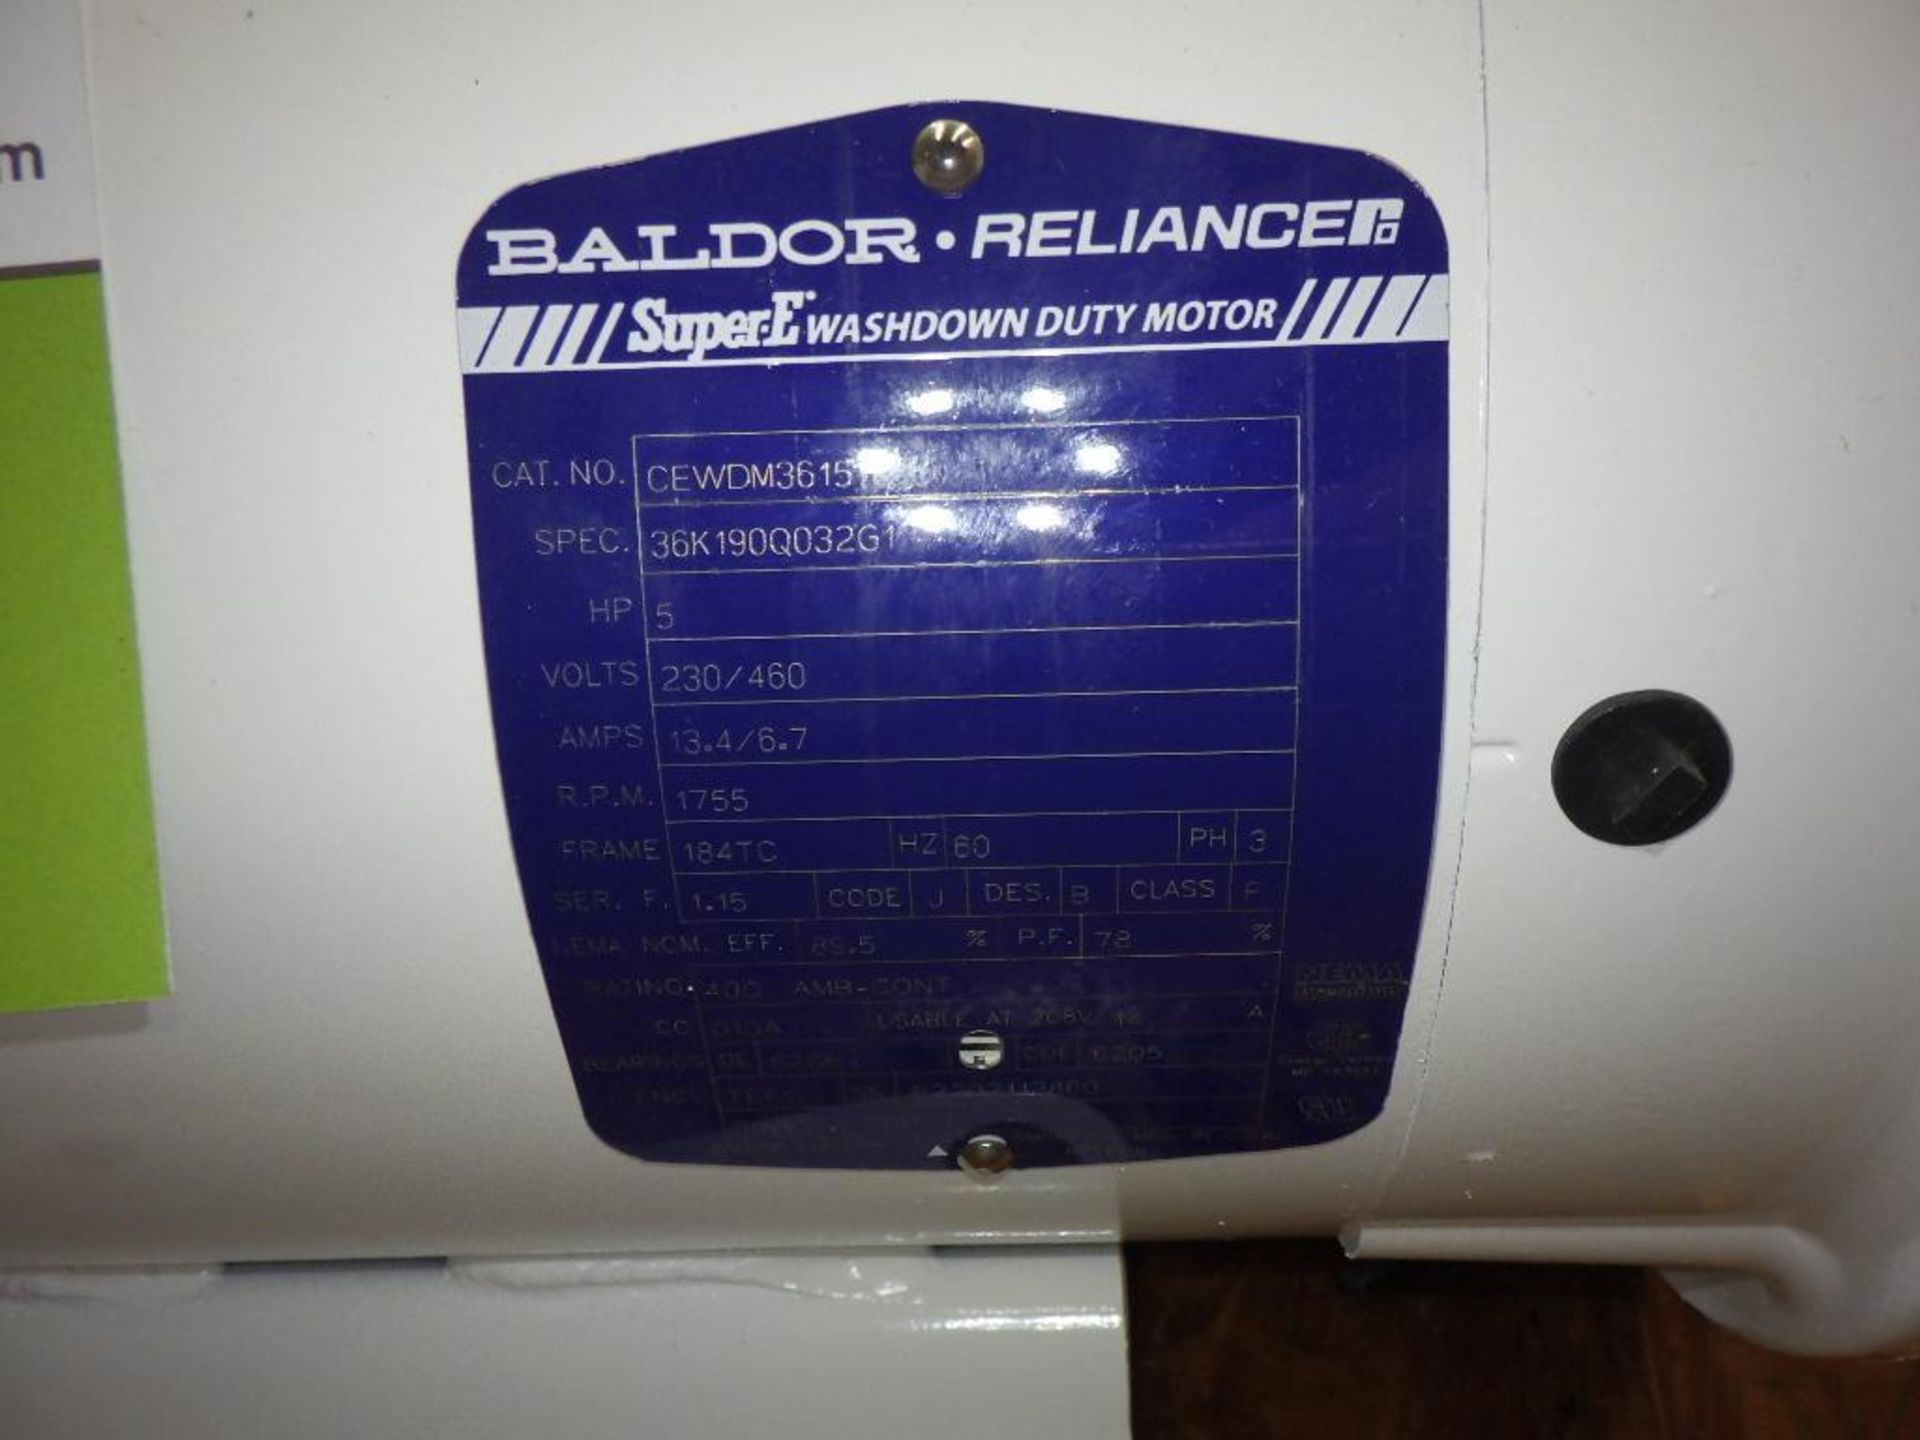 New Baldor 5 hp motor - Image 4 of 5